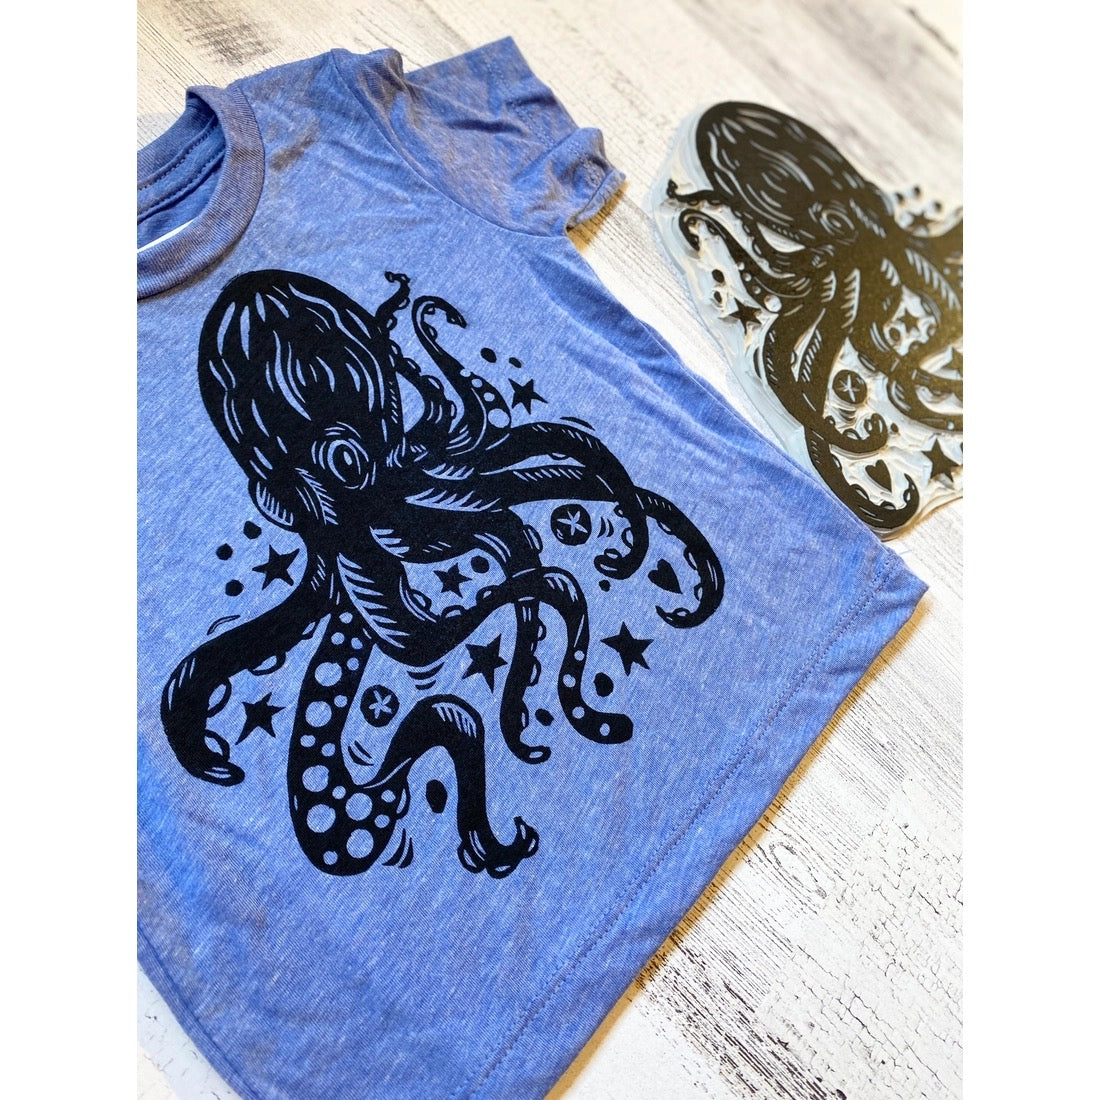 Block Print Octopus Tee in blue